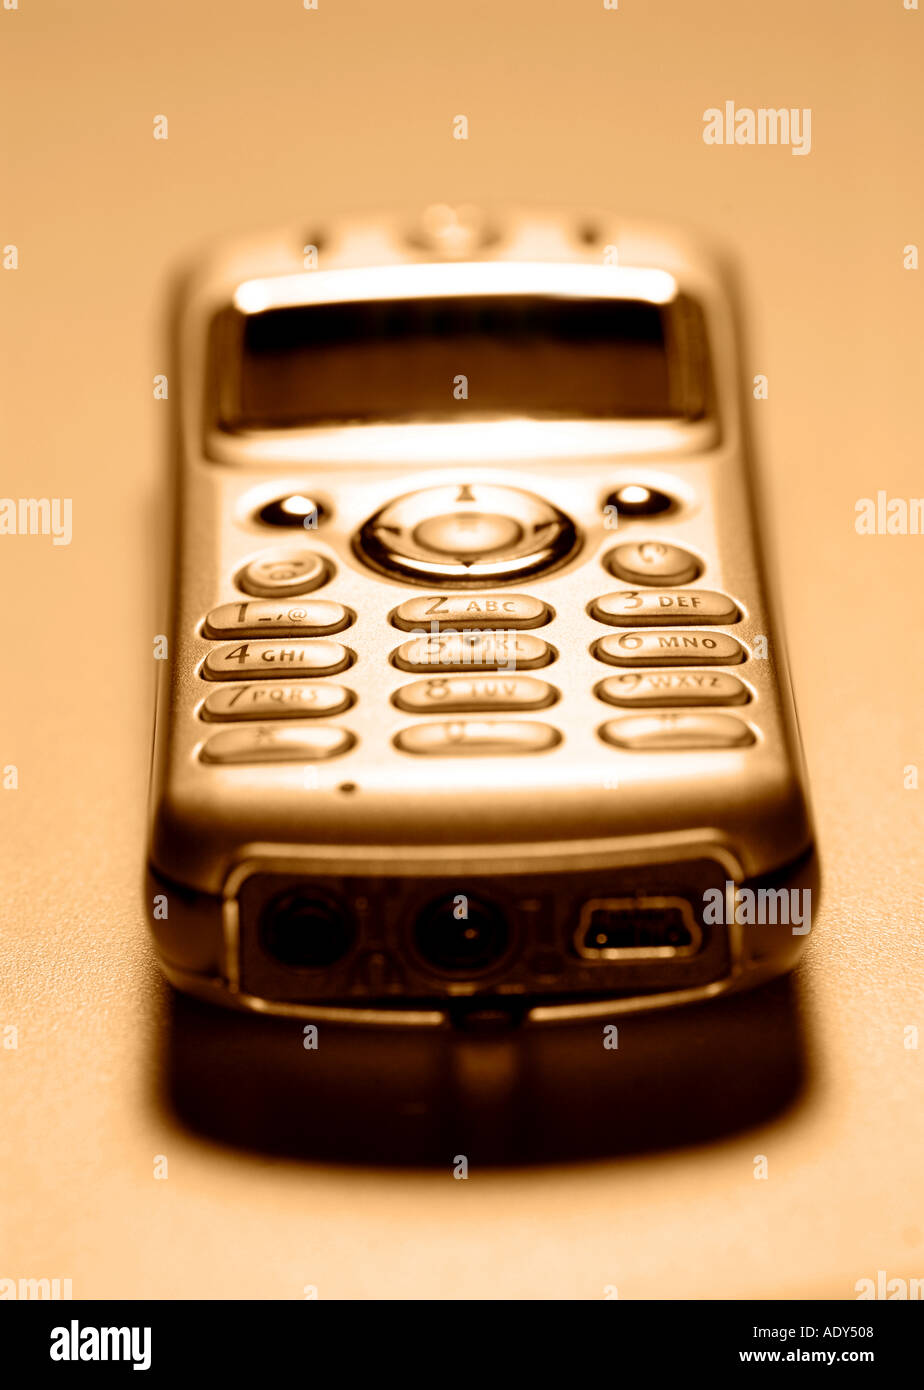 Tecnologia di comunicazione cellulare cellulare telefono cellulare telefono Telefoni home chiudi chiudi fino rubrica numeri numero di motorola Foto Stock